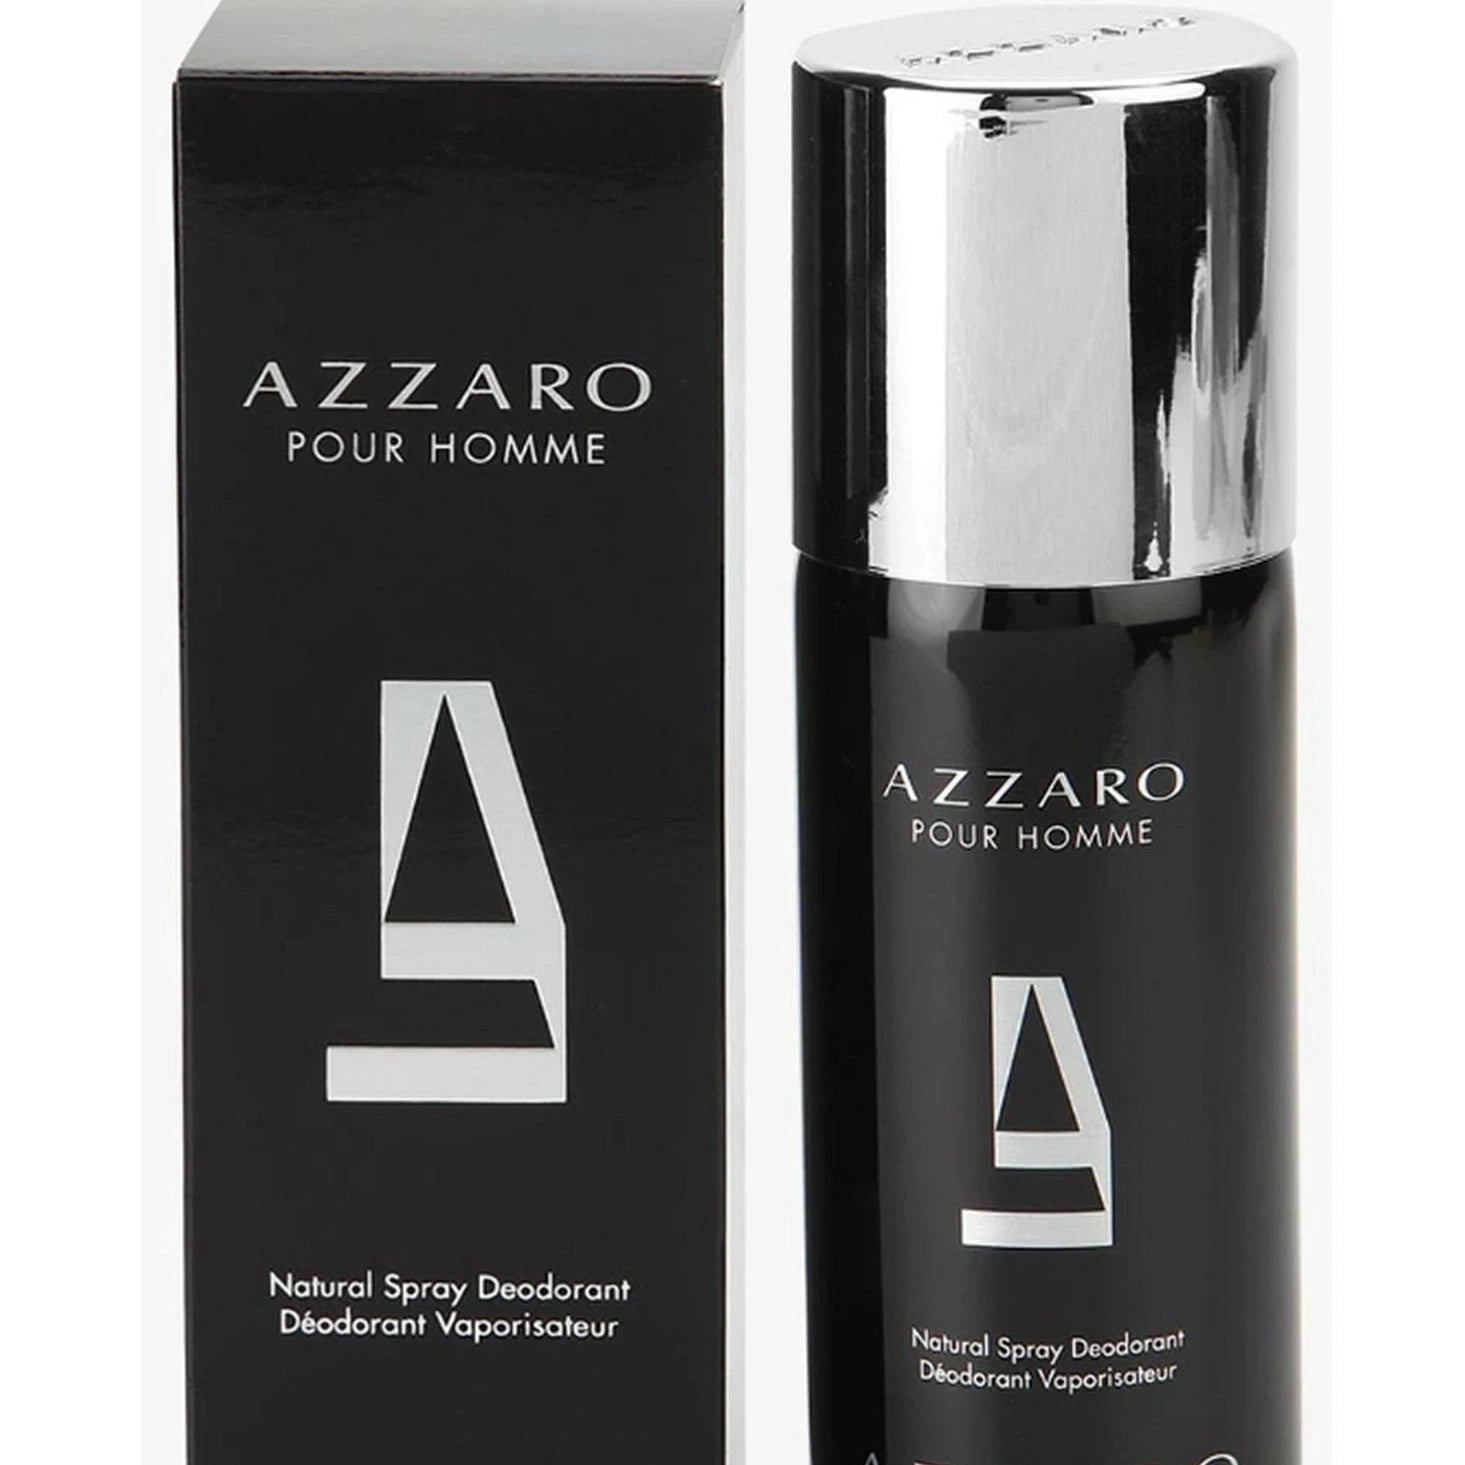 Azzaro Pour Homme Deodorant Spray | My Perfume Shop Australia